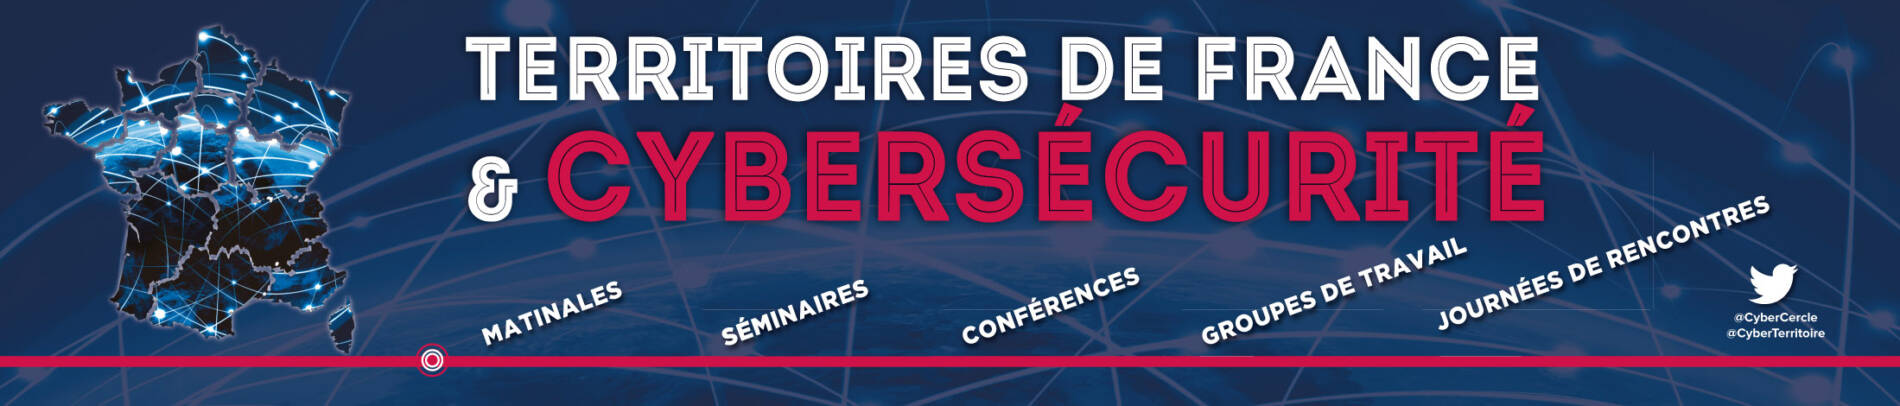 TDFCyber : Territoires de France et Cybersécurité